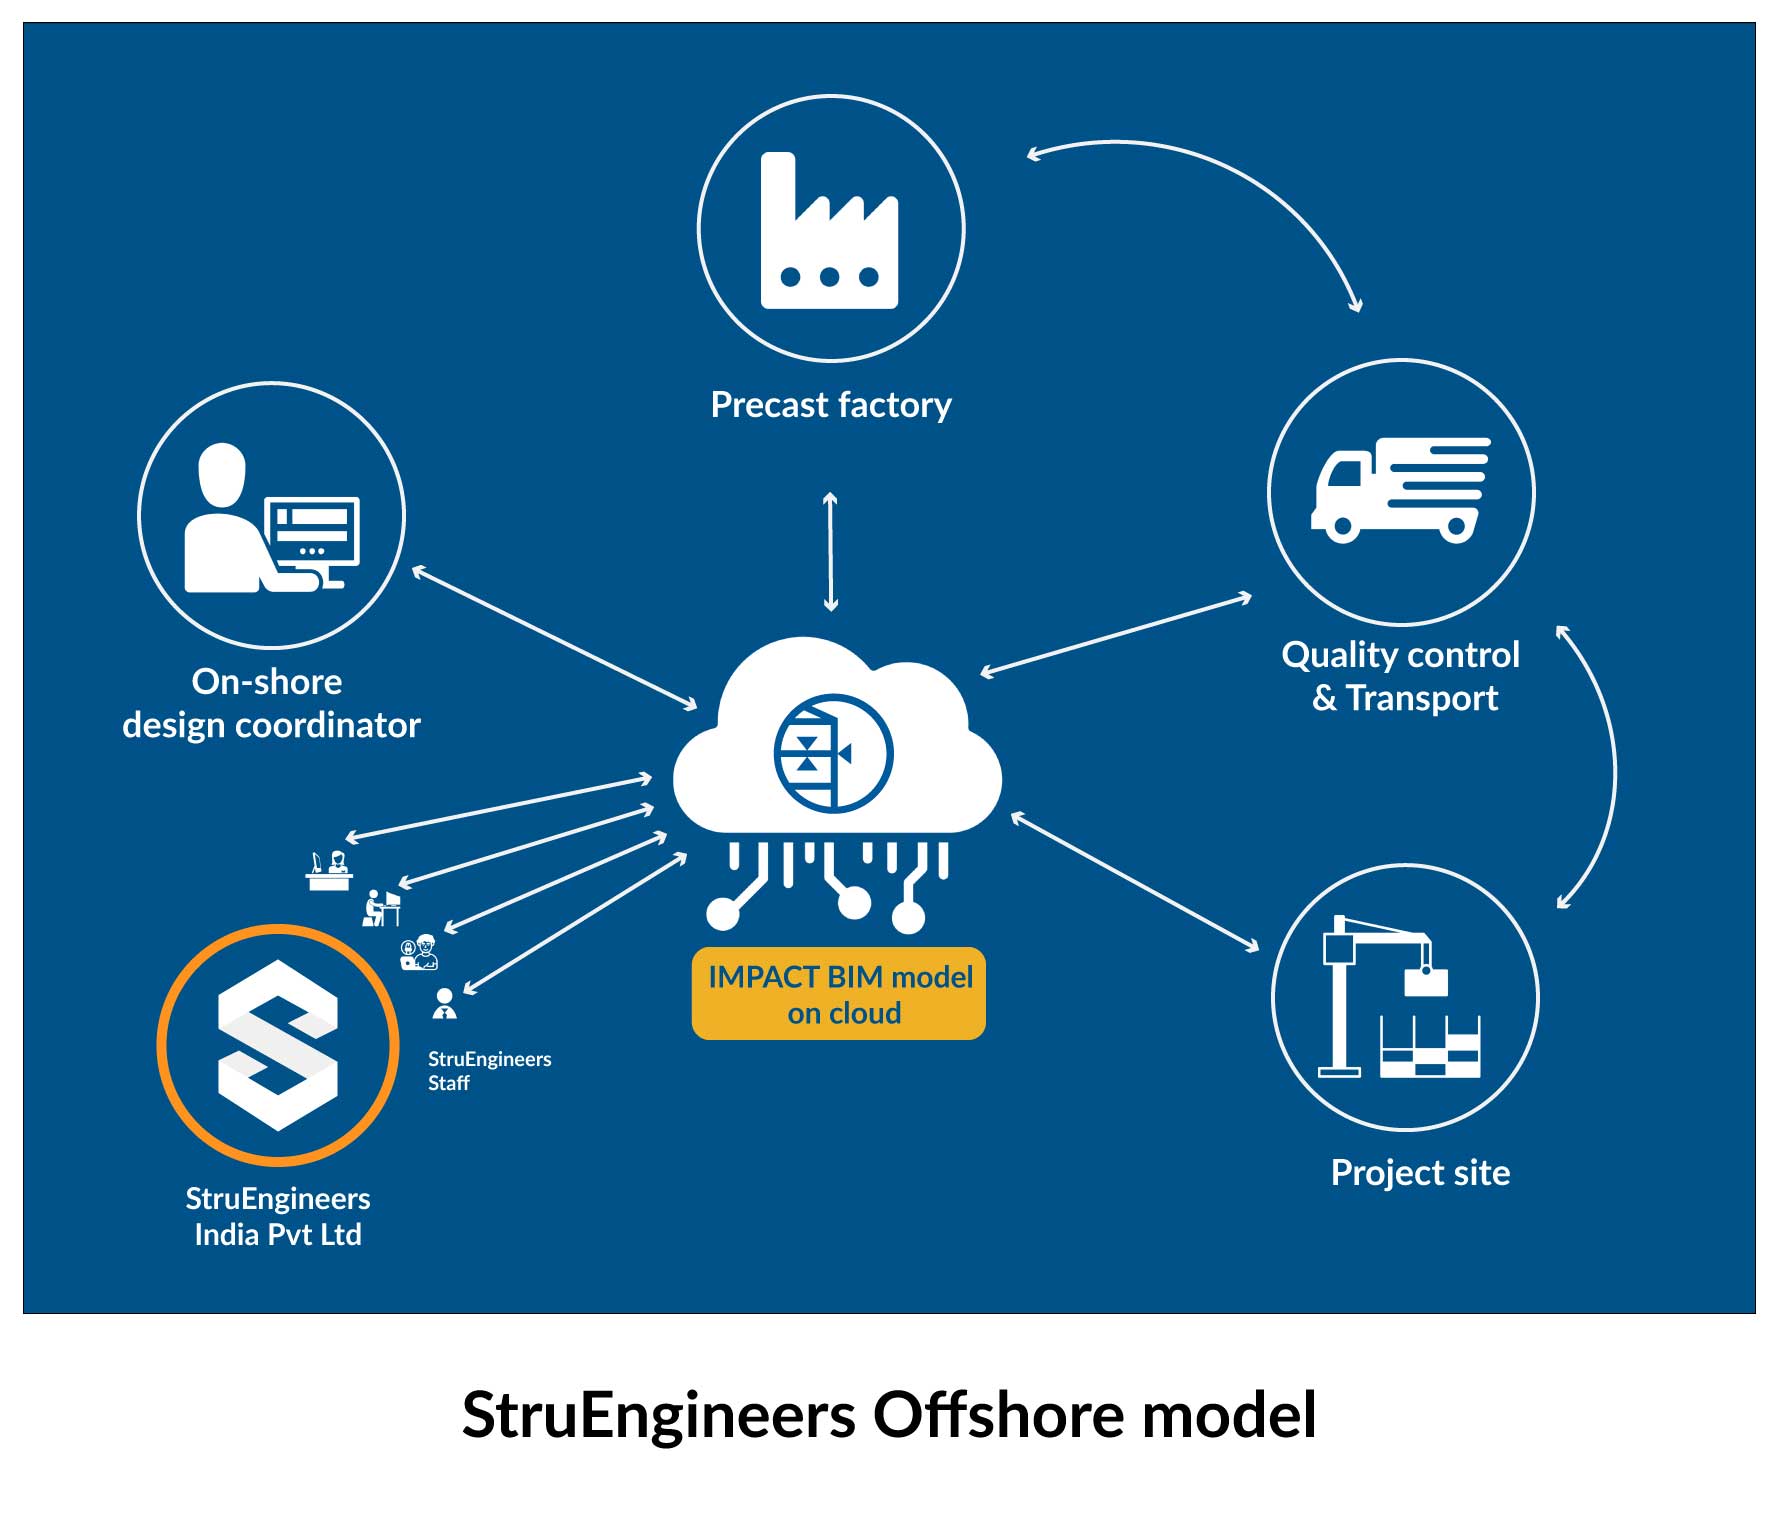 struengineers offshore model